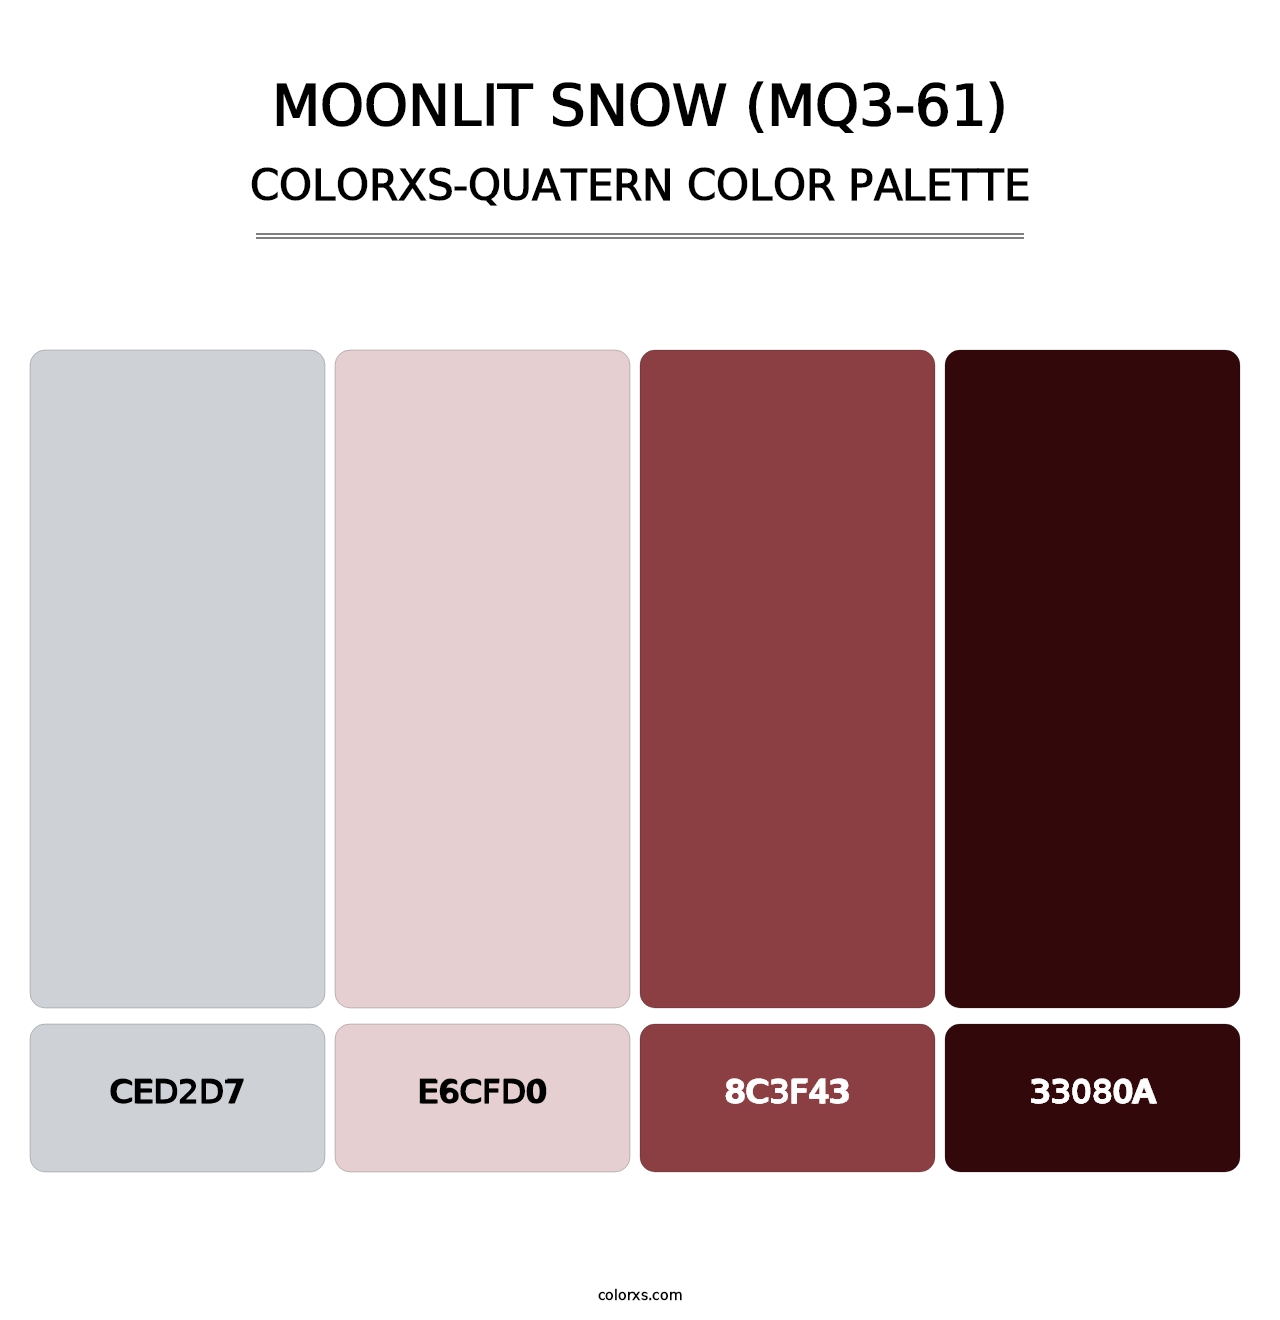 Moonlit Snow (MQ3-61) - Colorxs Quatern Palette